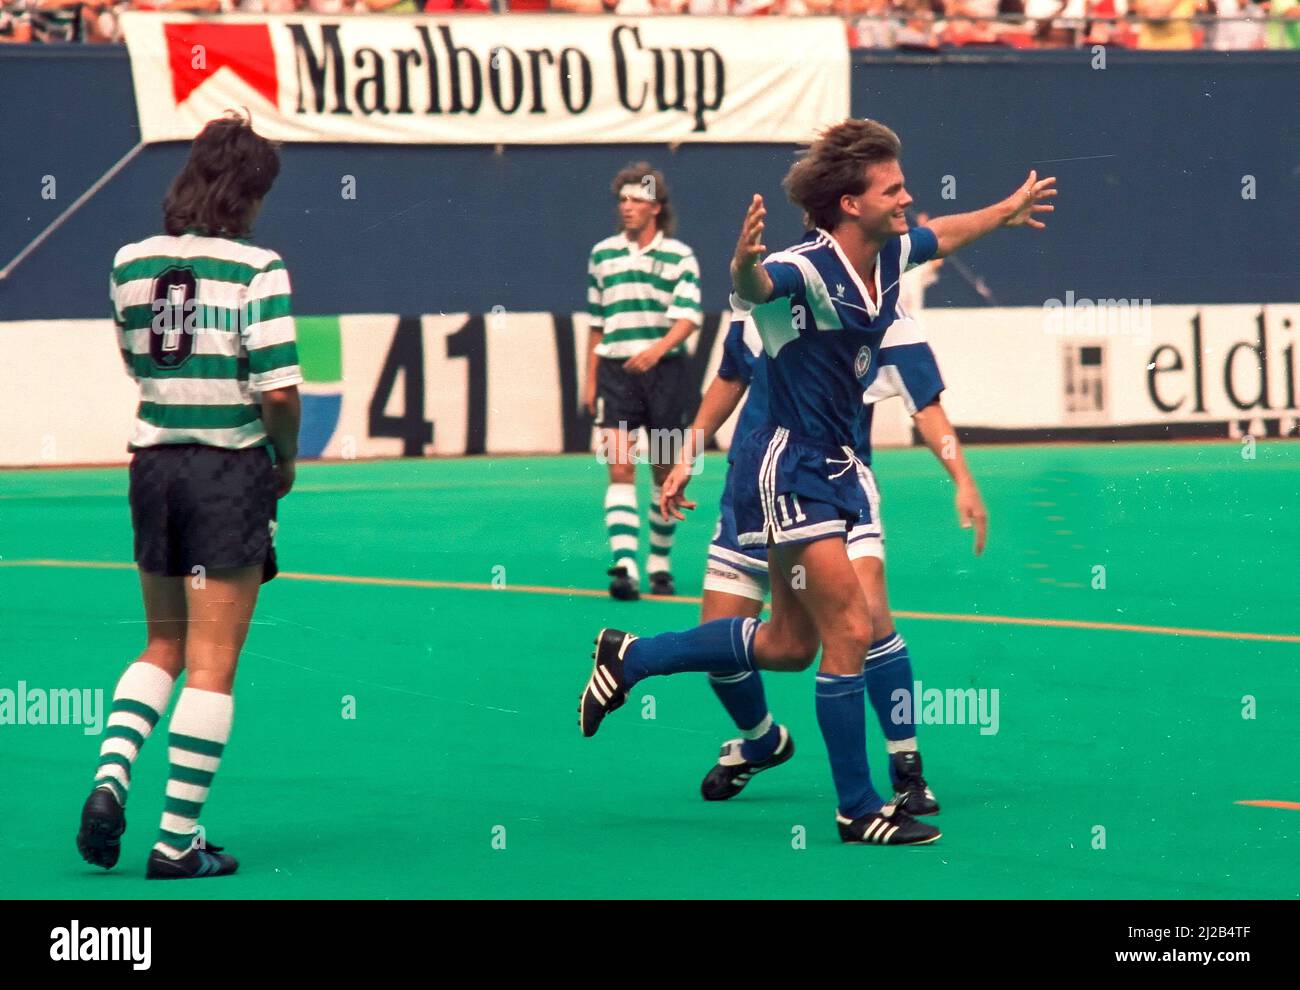 Eric Wynalda célèbre après avoir obtenu son score contre Sporting Portugal lors de la Marlboro Cup 1990 Banque D'Images